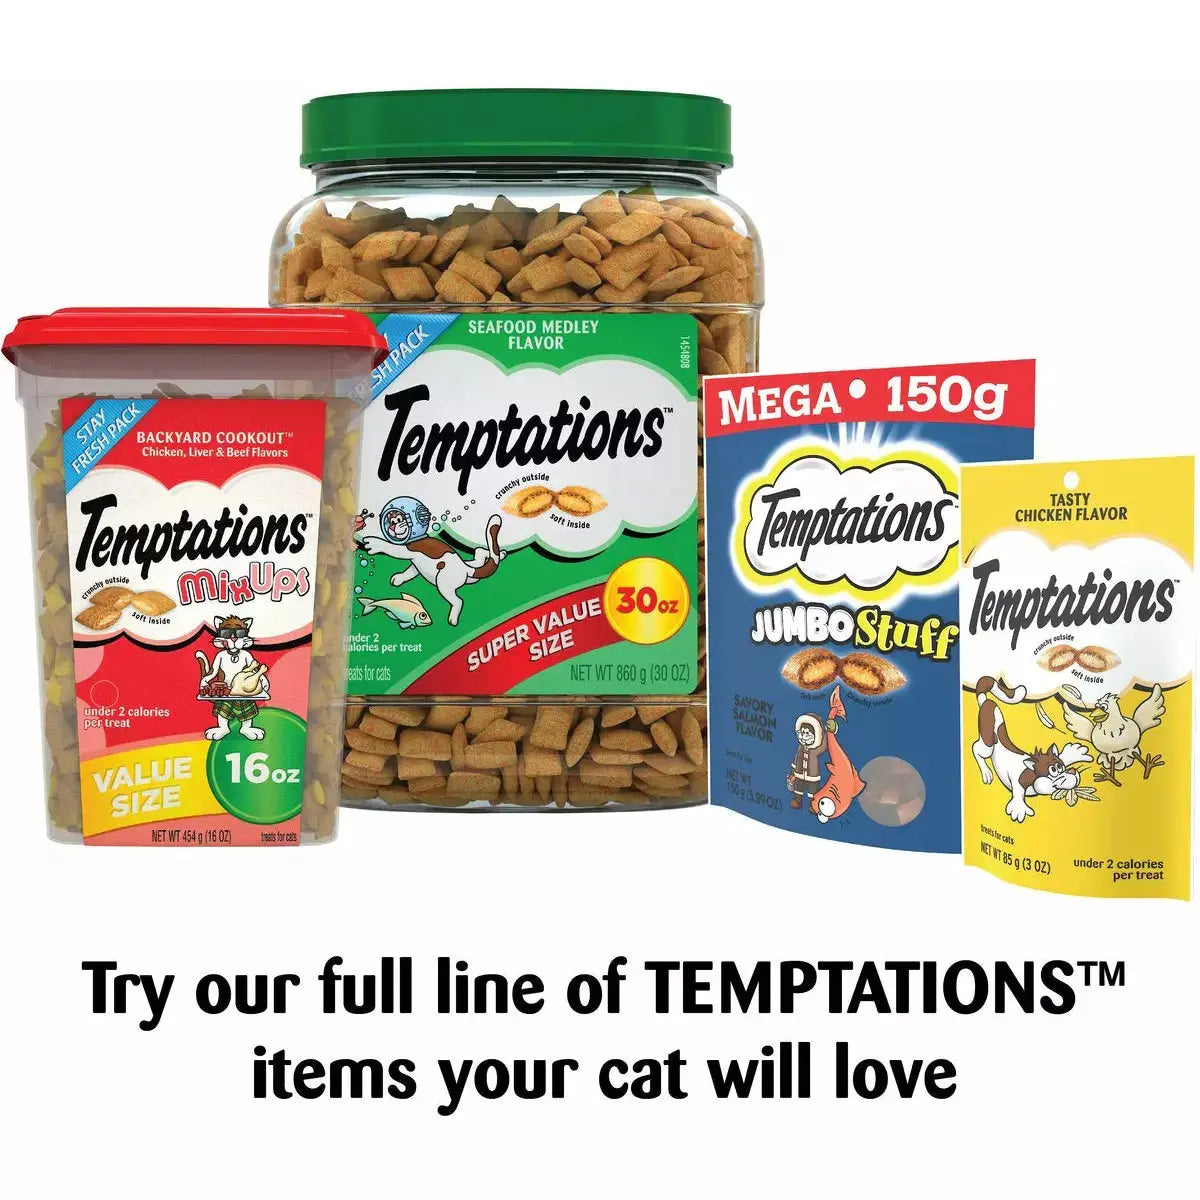 Temptations Shrimpy Shrimp Flavor Cat Treat 1ea/3 oz Temptations